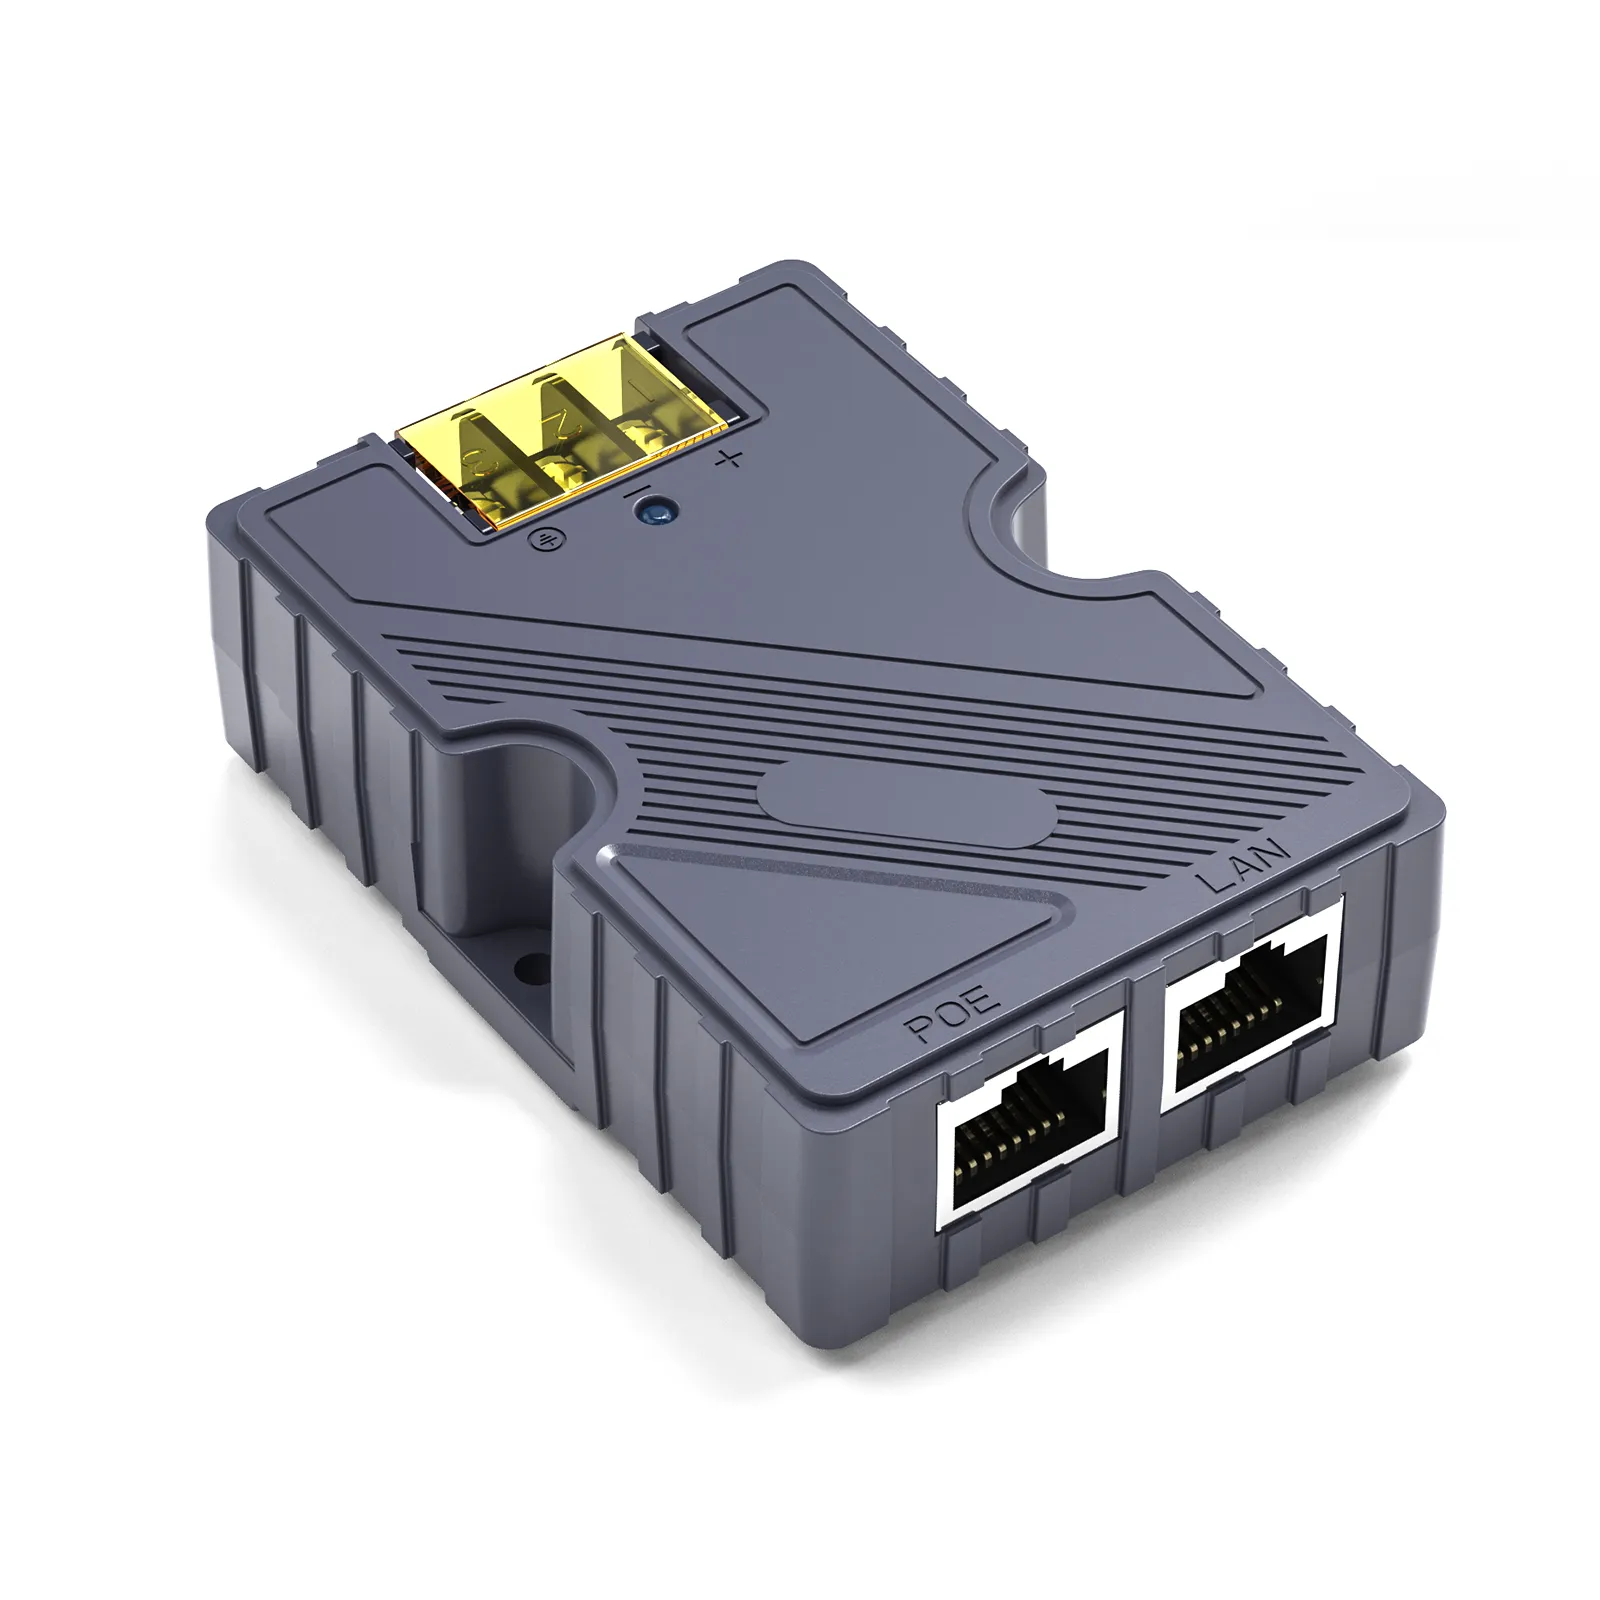 EDUP exklusiv Starlink-kompatibel 150 W GigE PoE Injektor Gigabit: Stromversorgungskonnektivität für Satelliten-Internetgeräte